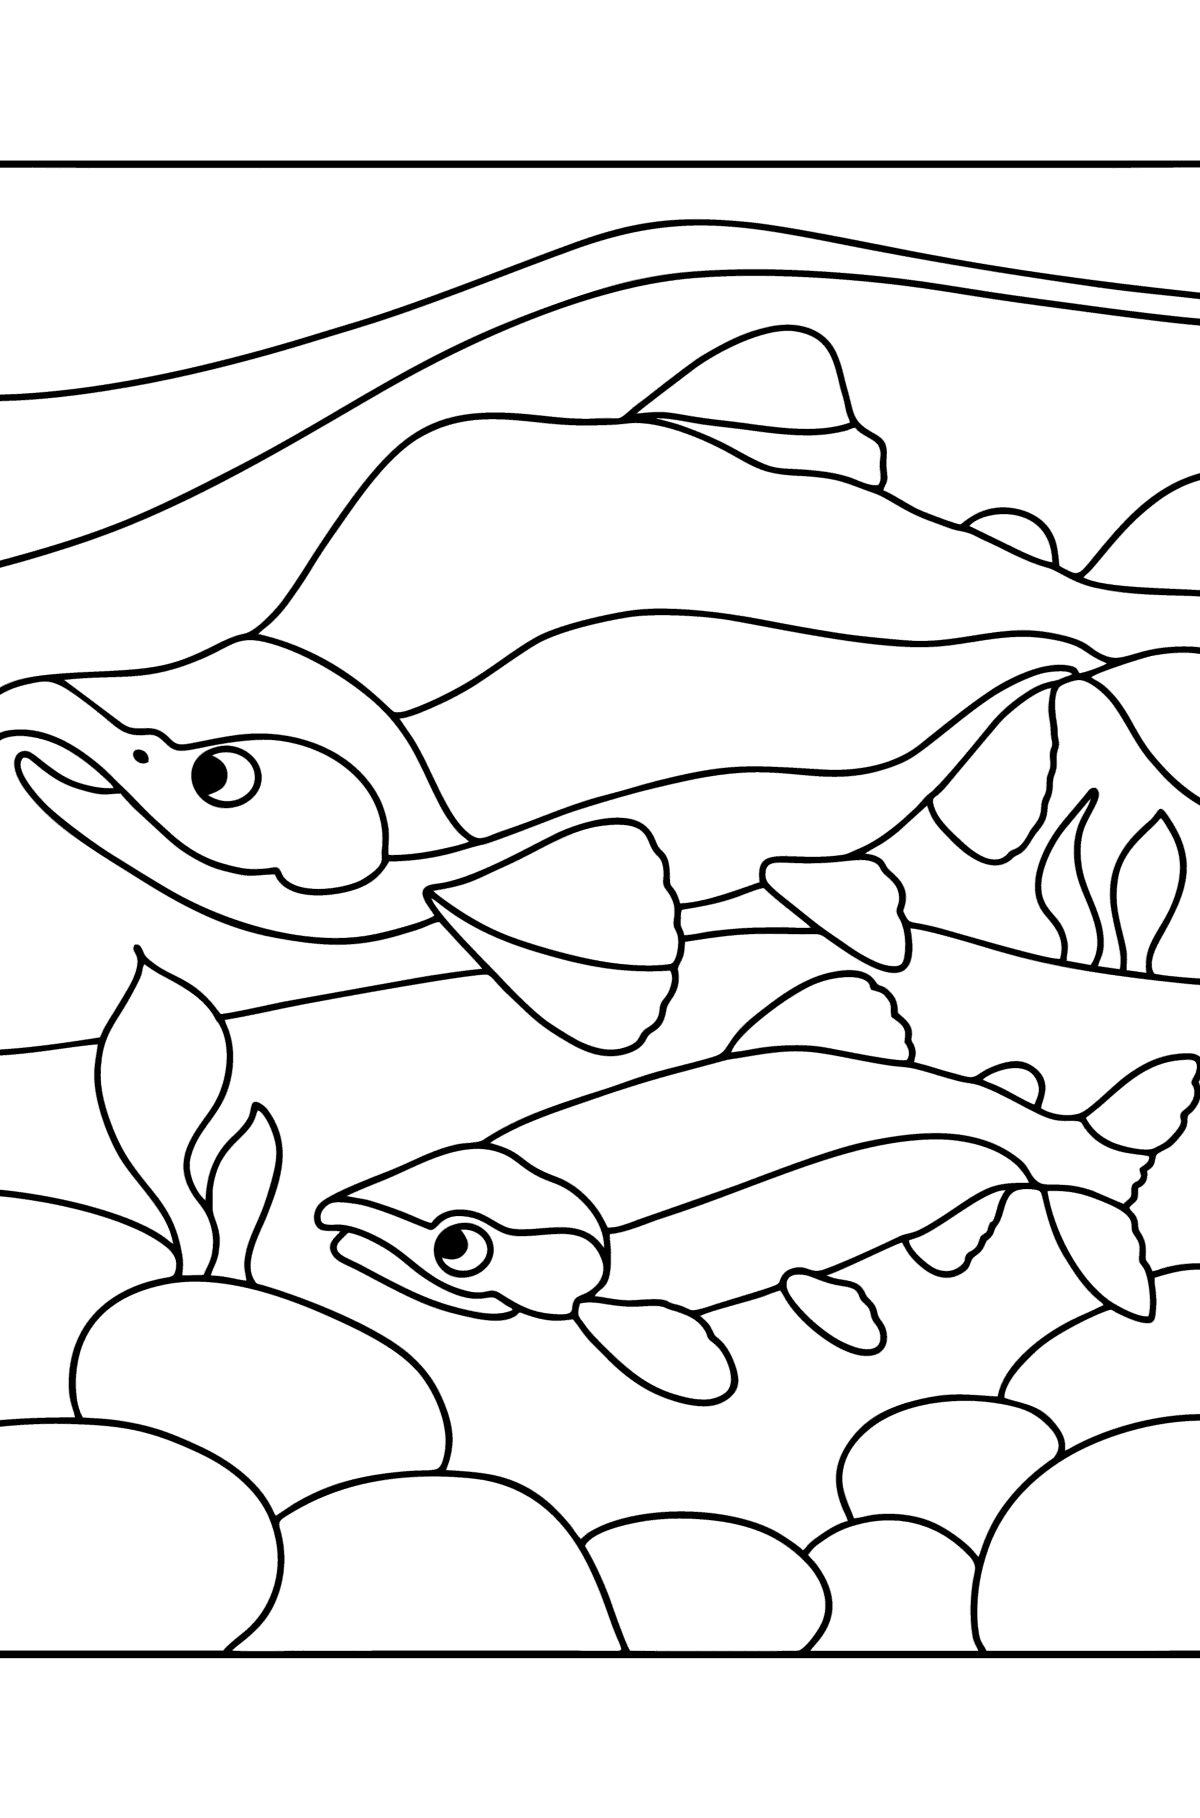 Ausmalbild Roter Lachs - Malvorlagen für Kinder